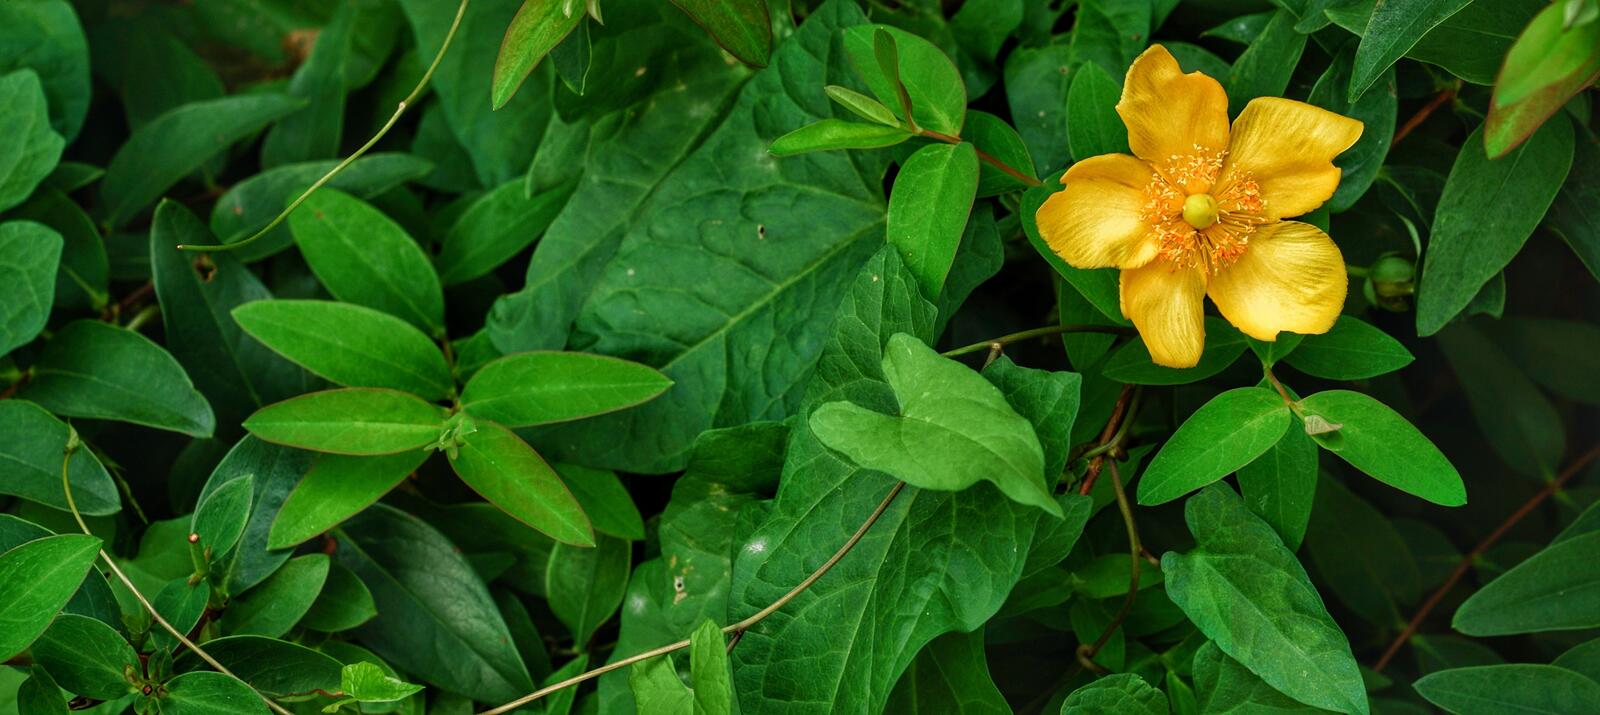 Бесплатное фото Одинокая жёлтая анемона в зеленом кустарнике